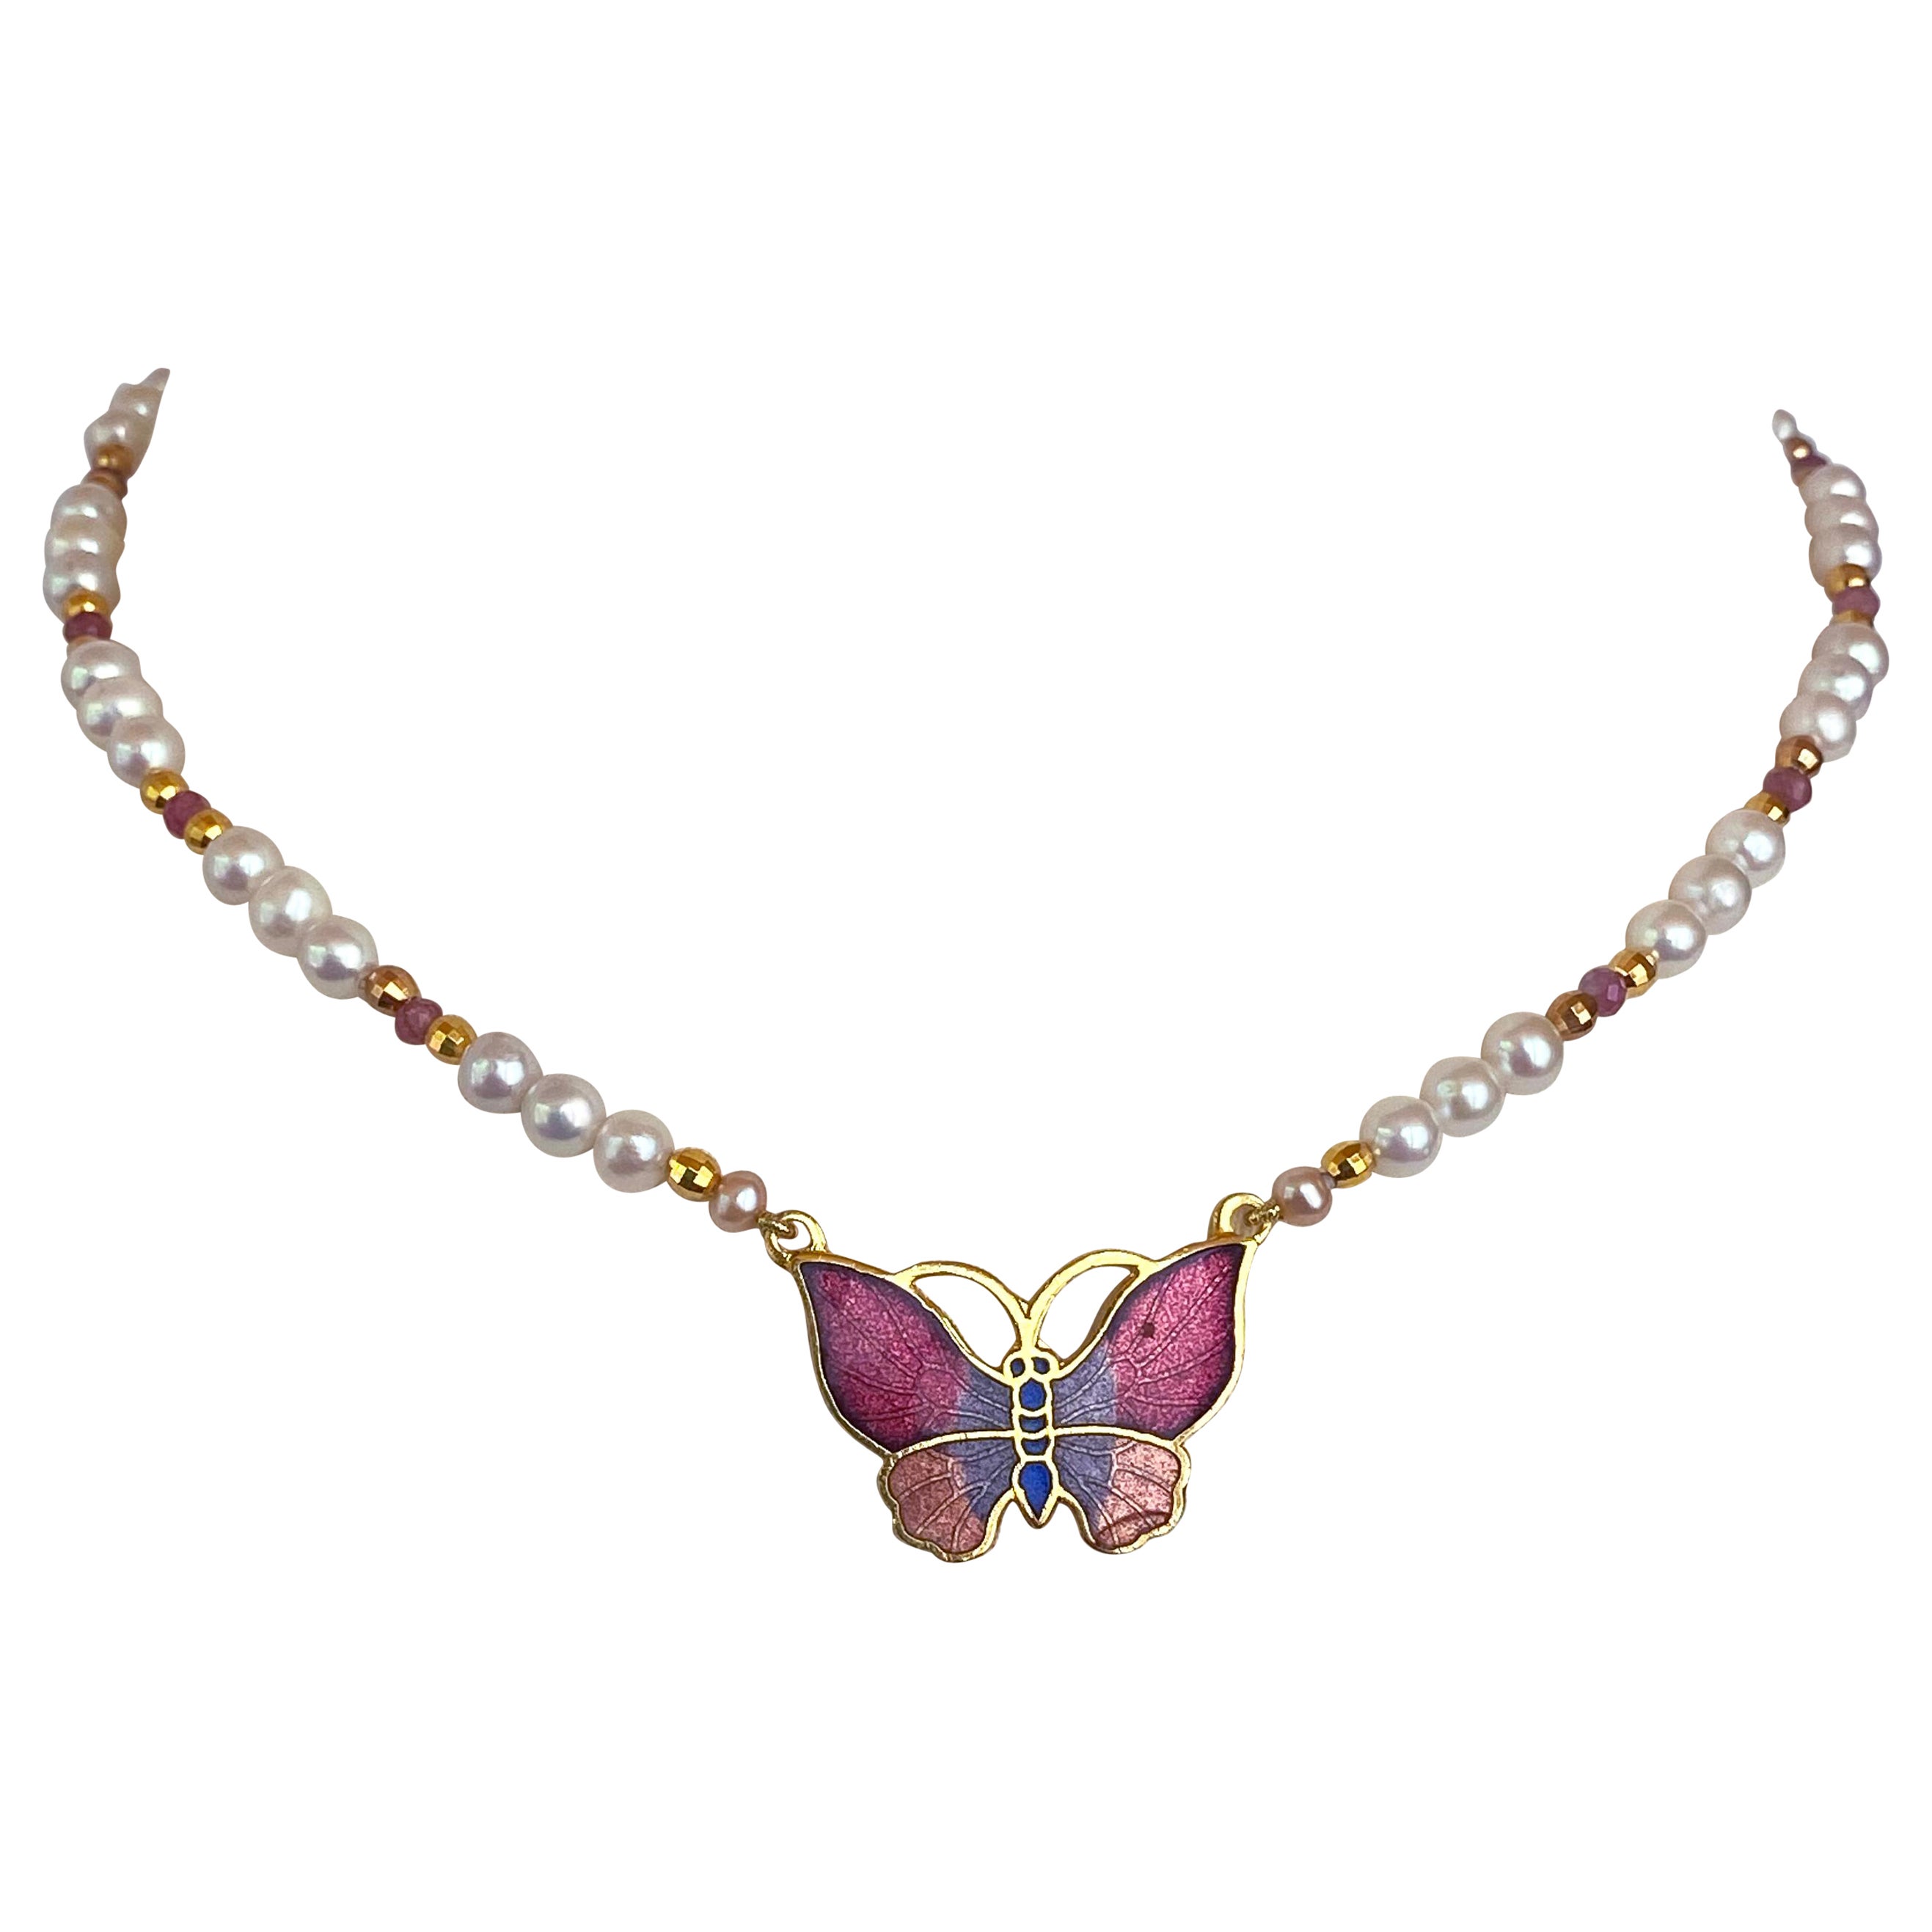 Marina J. Für Mädchen! Perlen-Halskette mit rosa Rubinen und Schmetterlingsbrosche